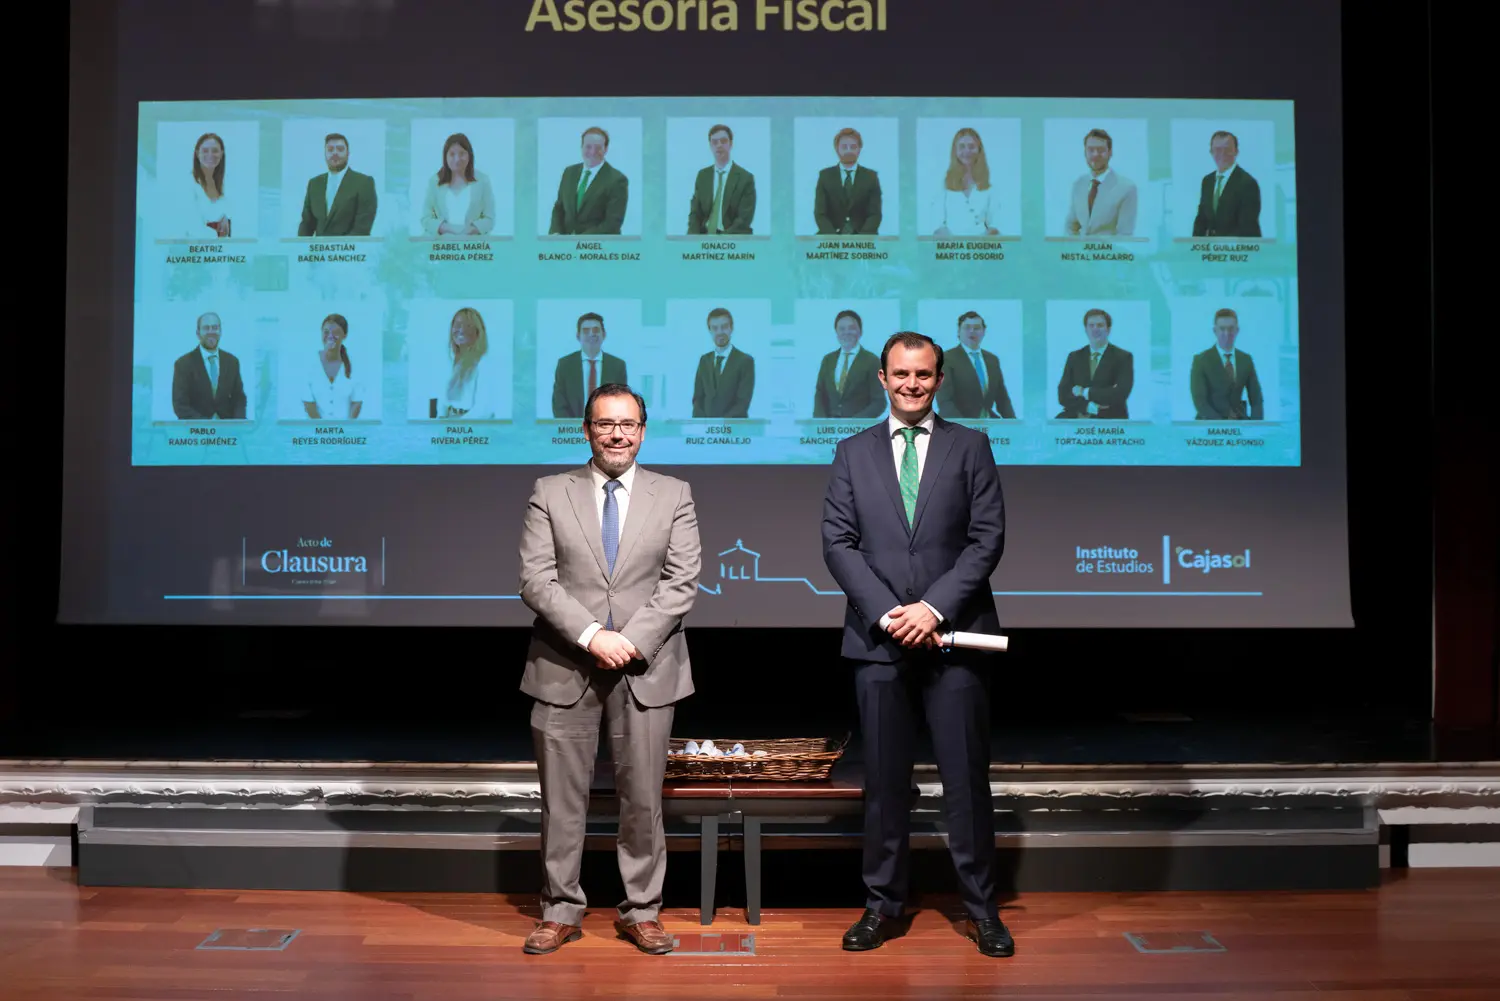 Gala de Clausura curso 2019/2020 Instituto de Estudios Cajasol